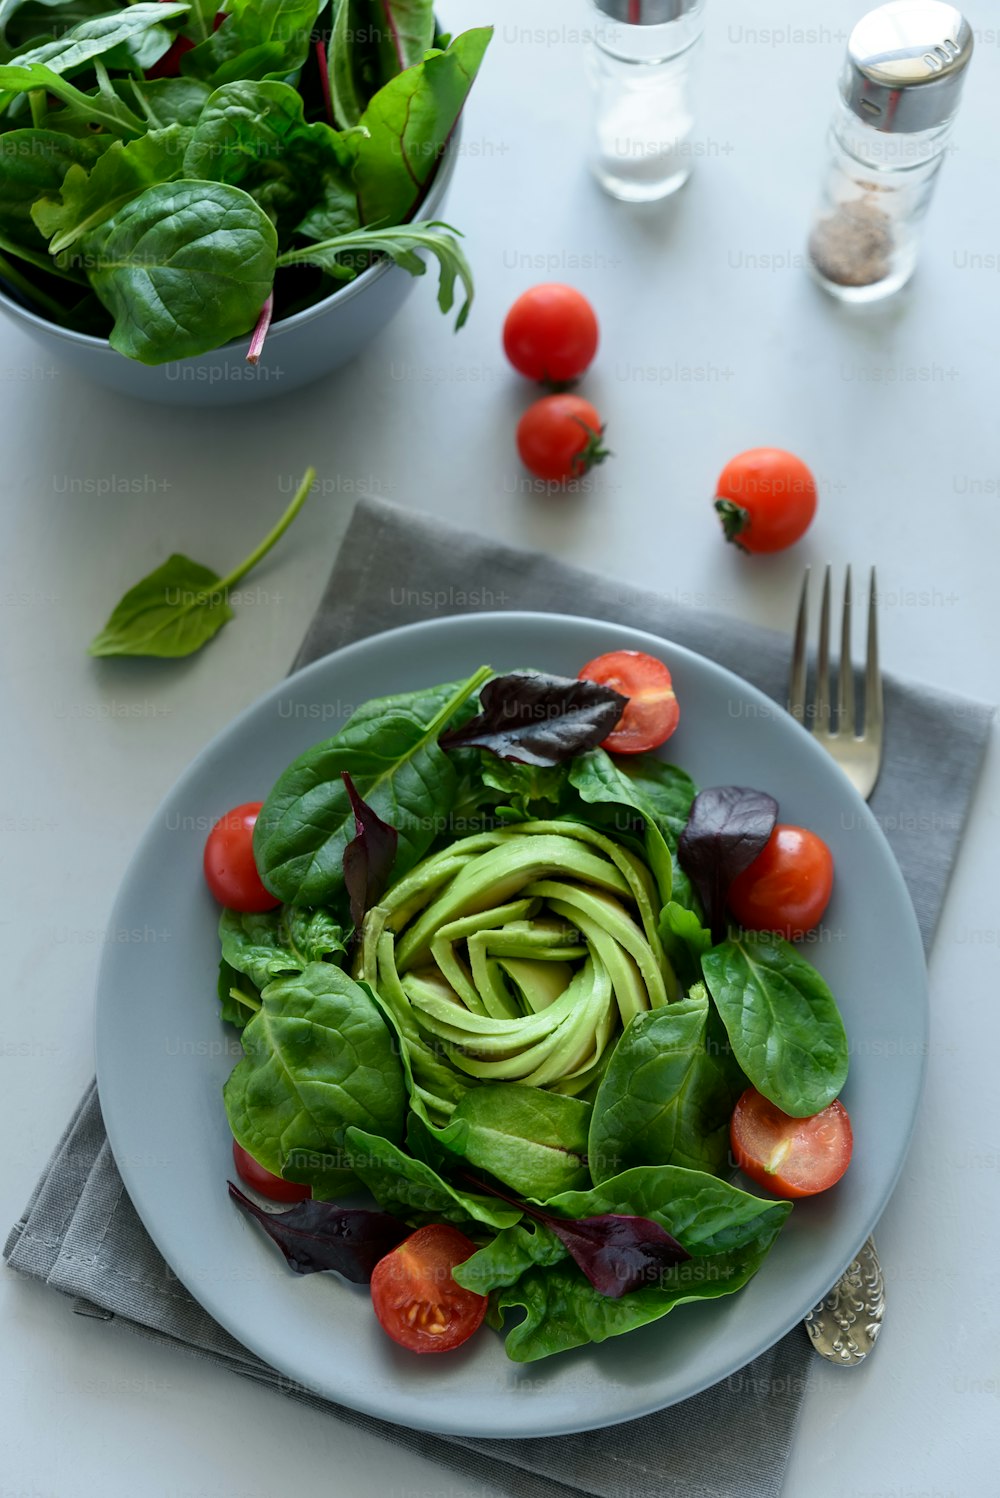 Salatmischung mit Avocado, Spinat, Tomaten und Rübenblättern auf grauem Holzhintergrund. Vegetarisches Essenskonzept. Selektiver Fokus.